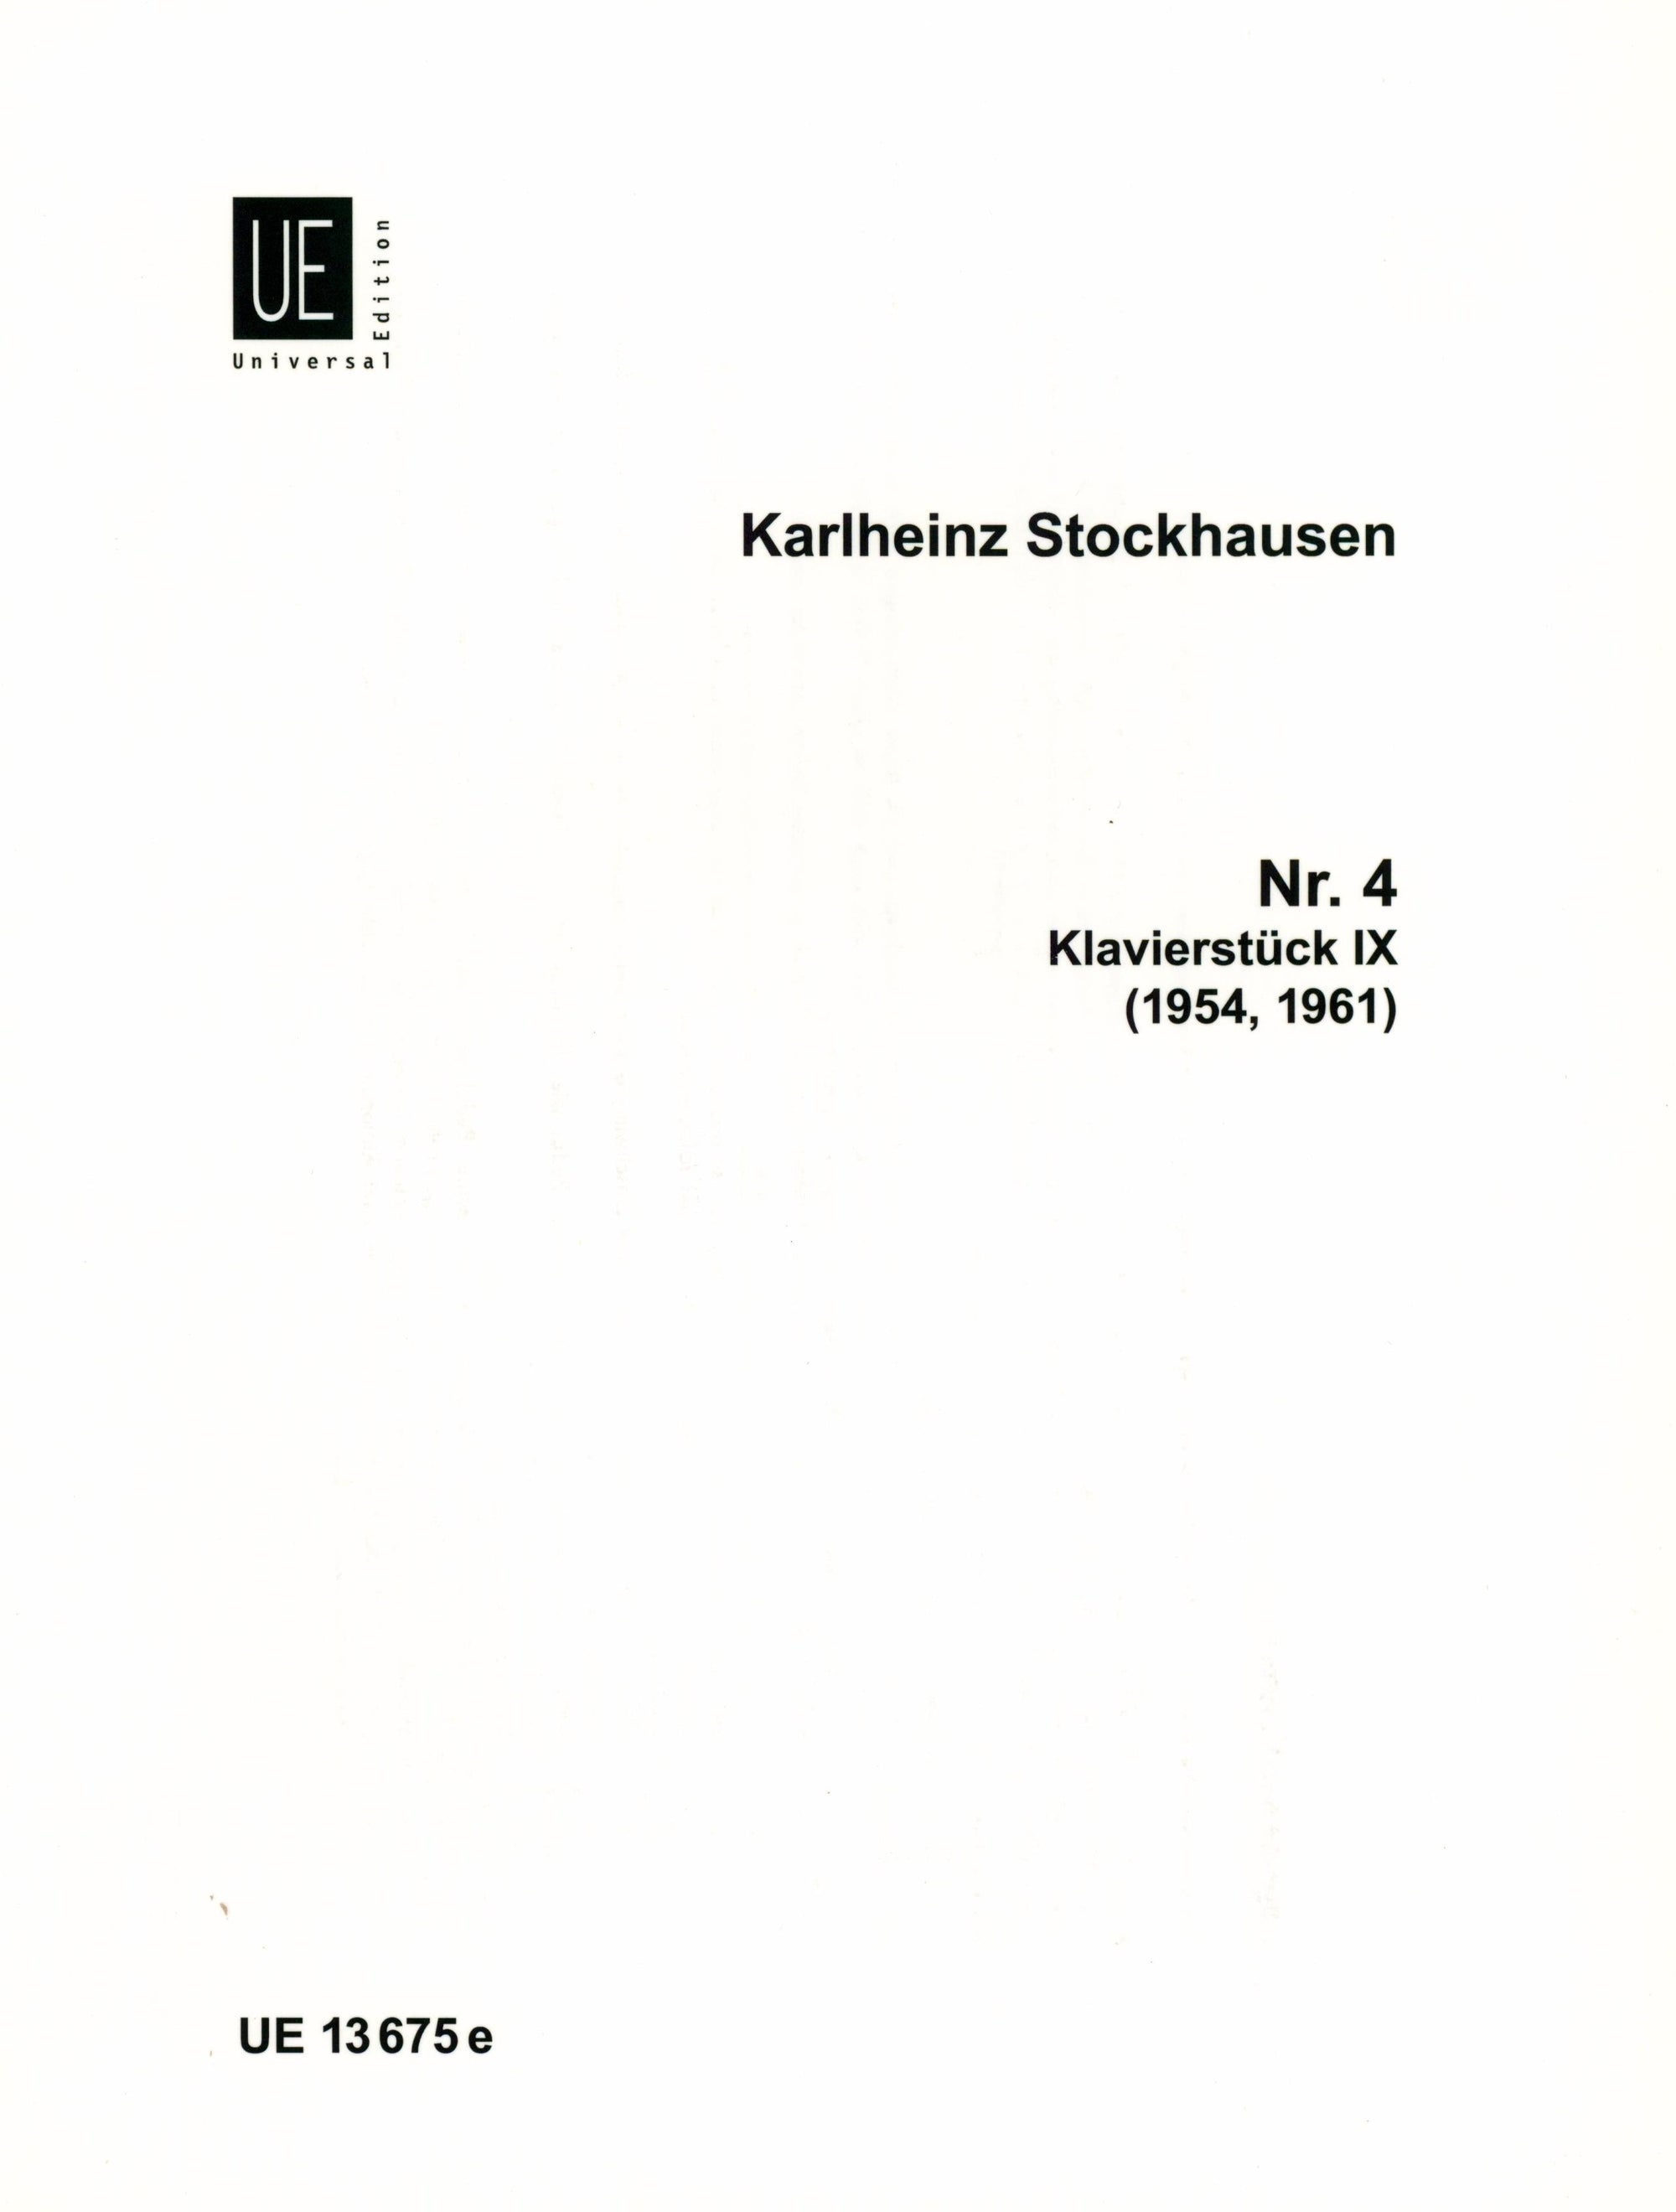 Stockhausen: Klavierstück IX